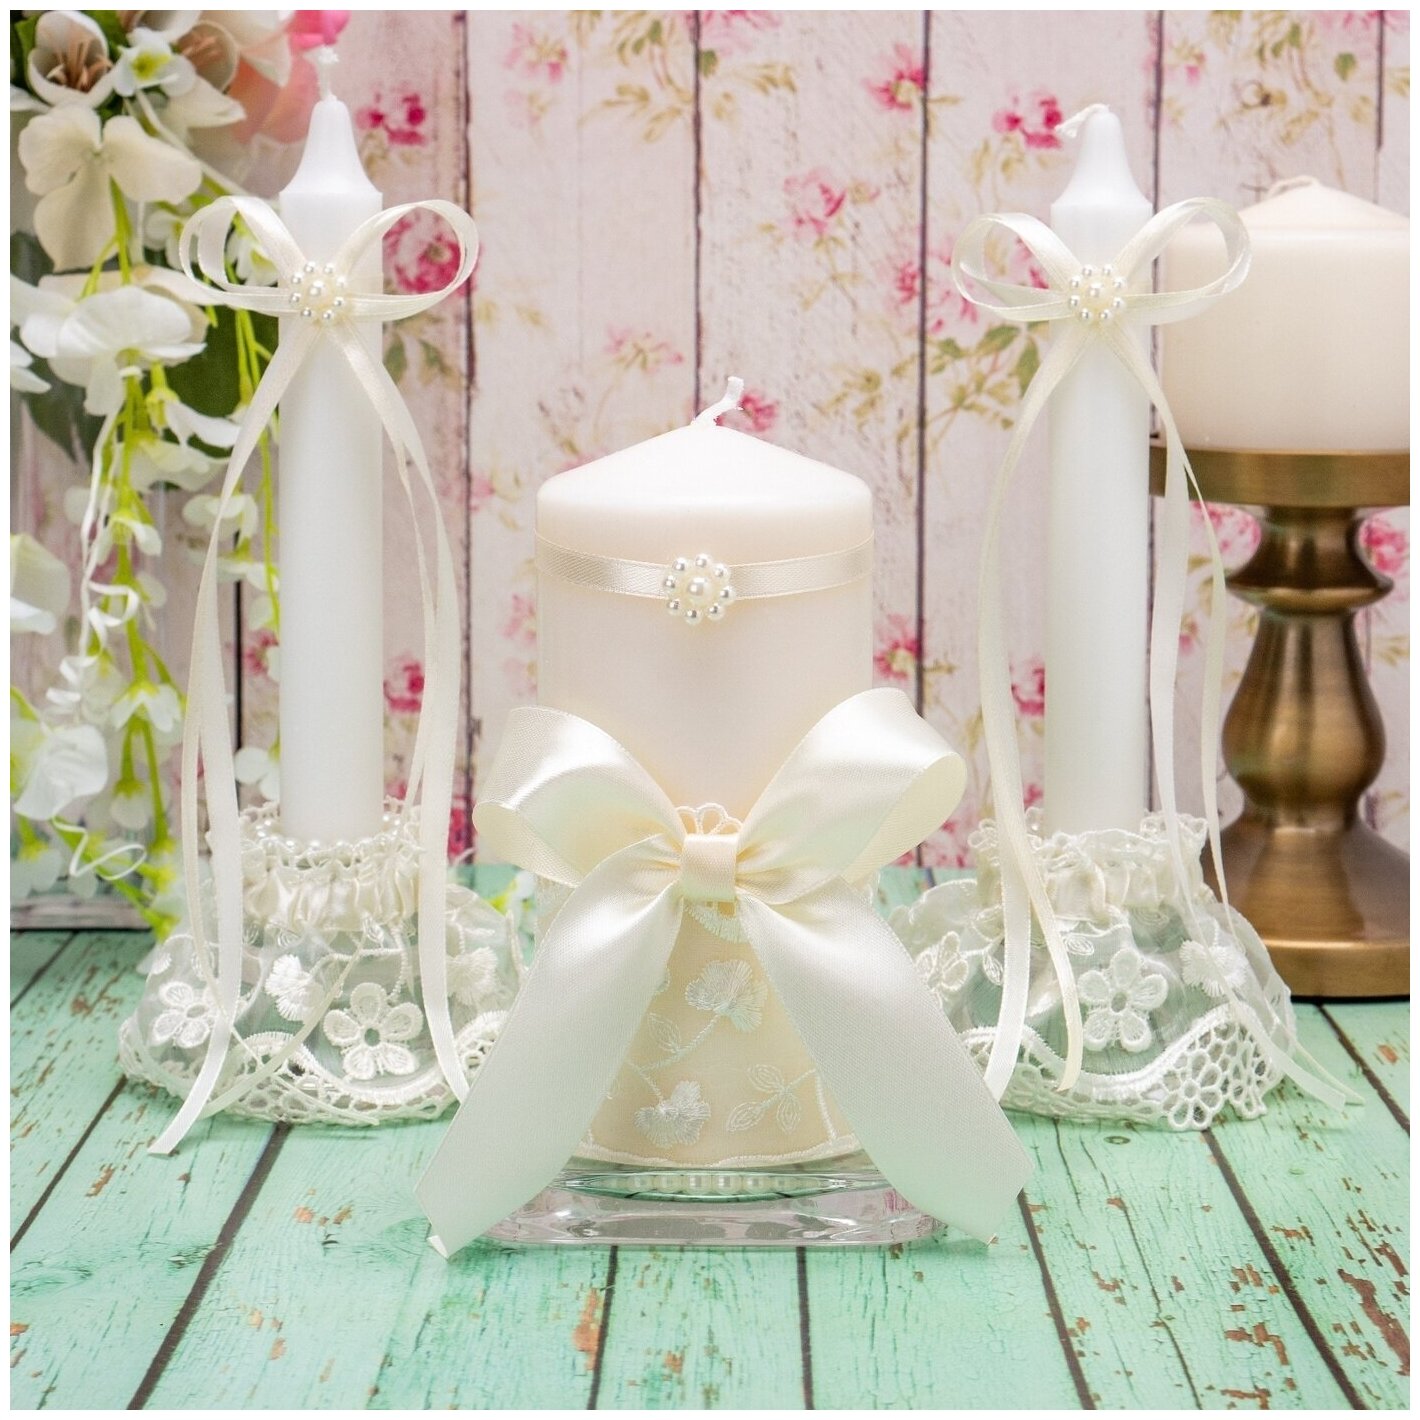 Набор свечей для свадьбы, венчания и церемонии домашнего очага "Божена" айвори с кружевом, бусинами и атласными бантами цвета слоновой кости